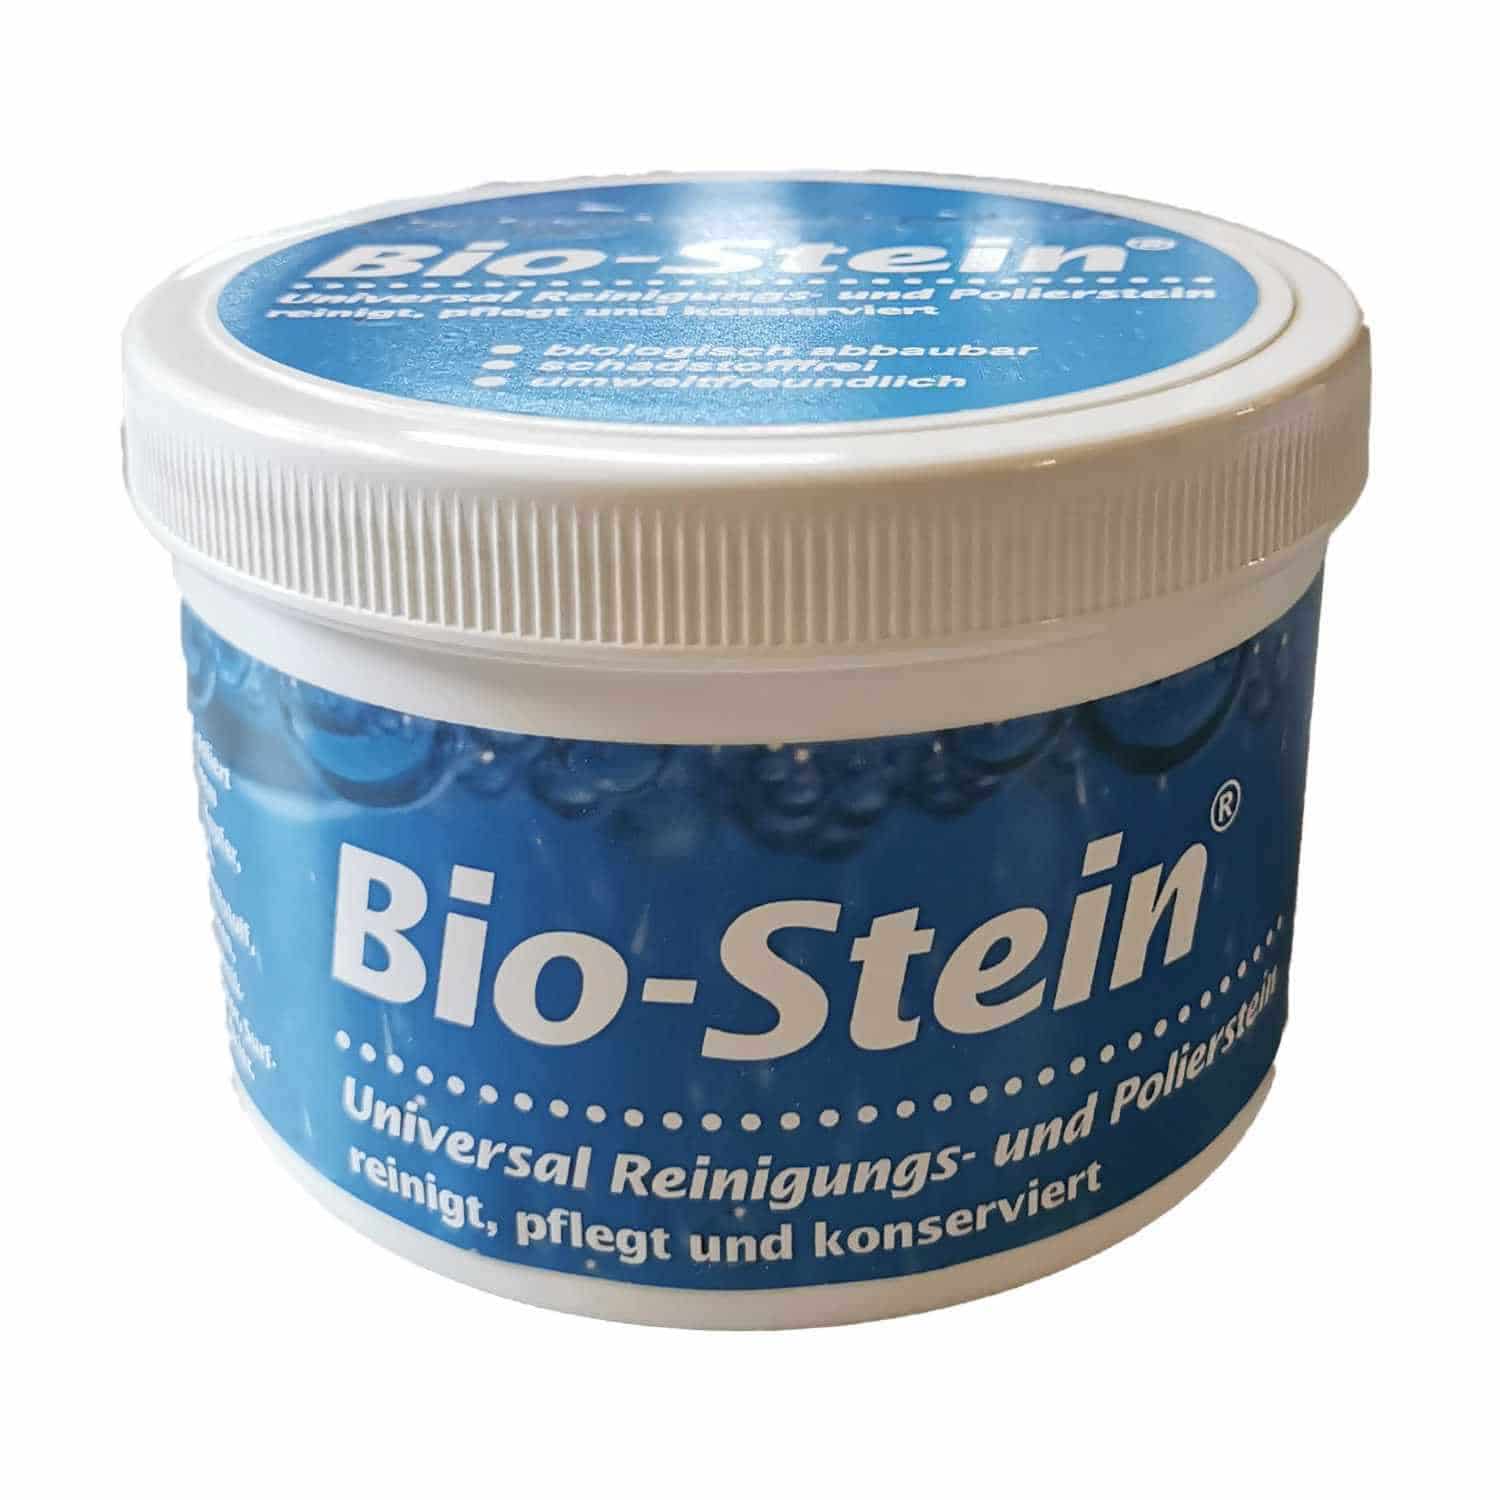 Bio-Stein 700 g - Reinigungs- und Polierstein Karton mit 1 Dose + Schwamm